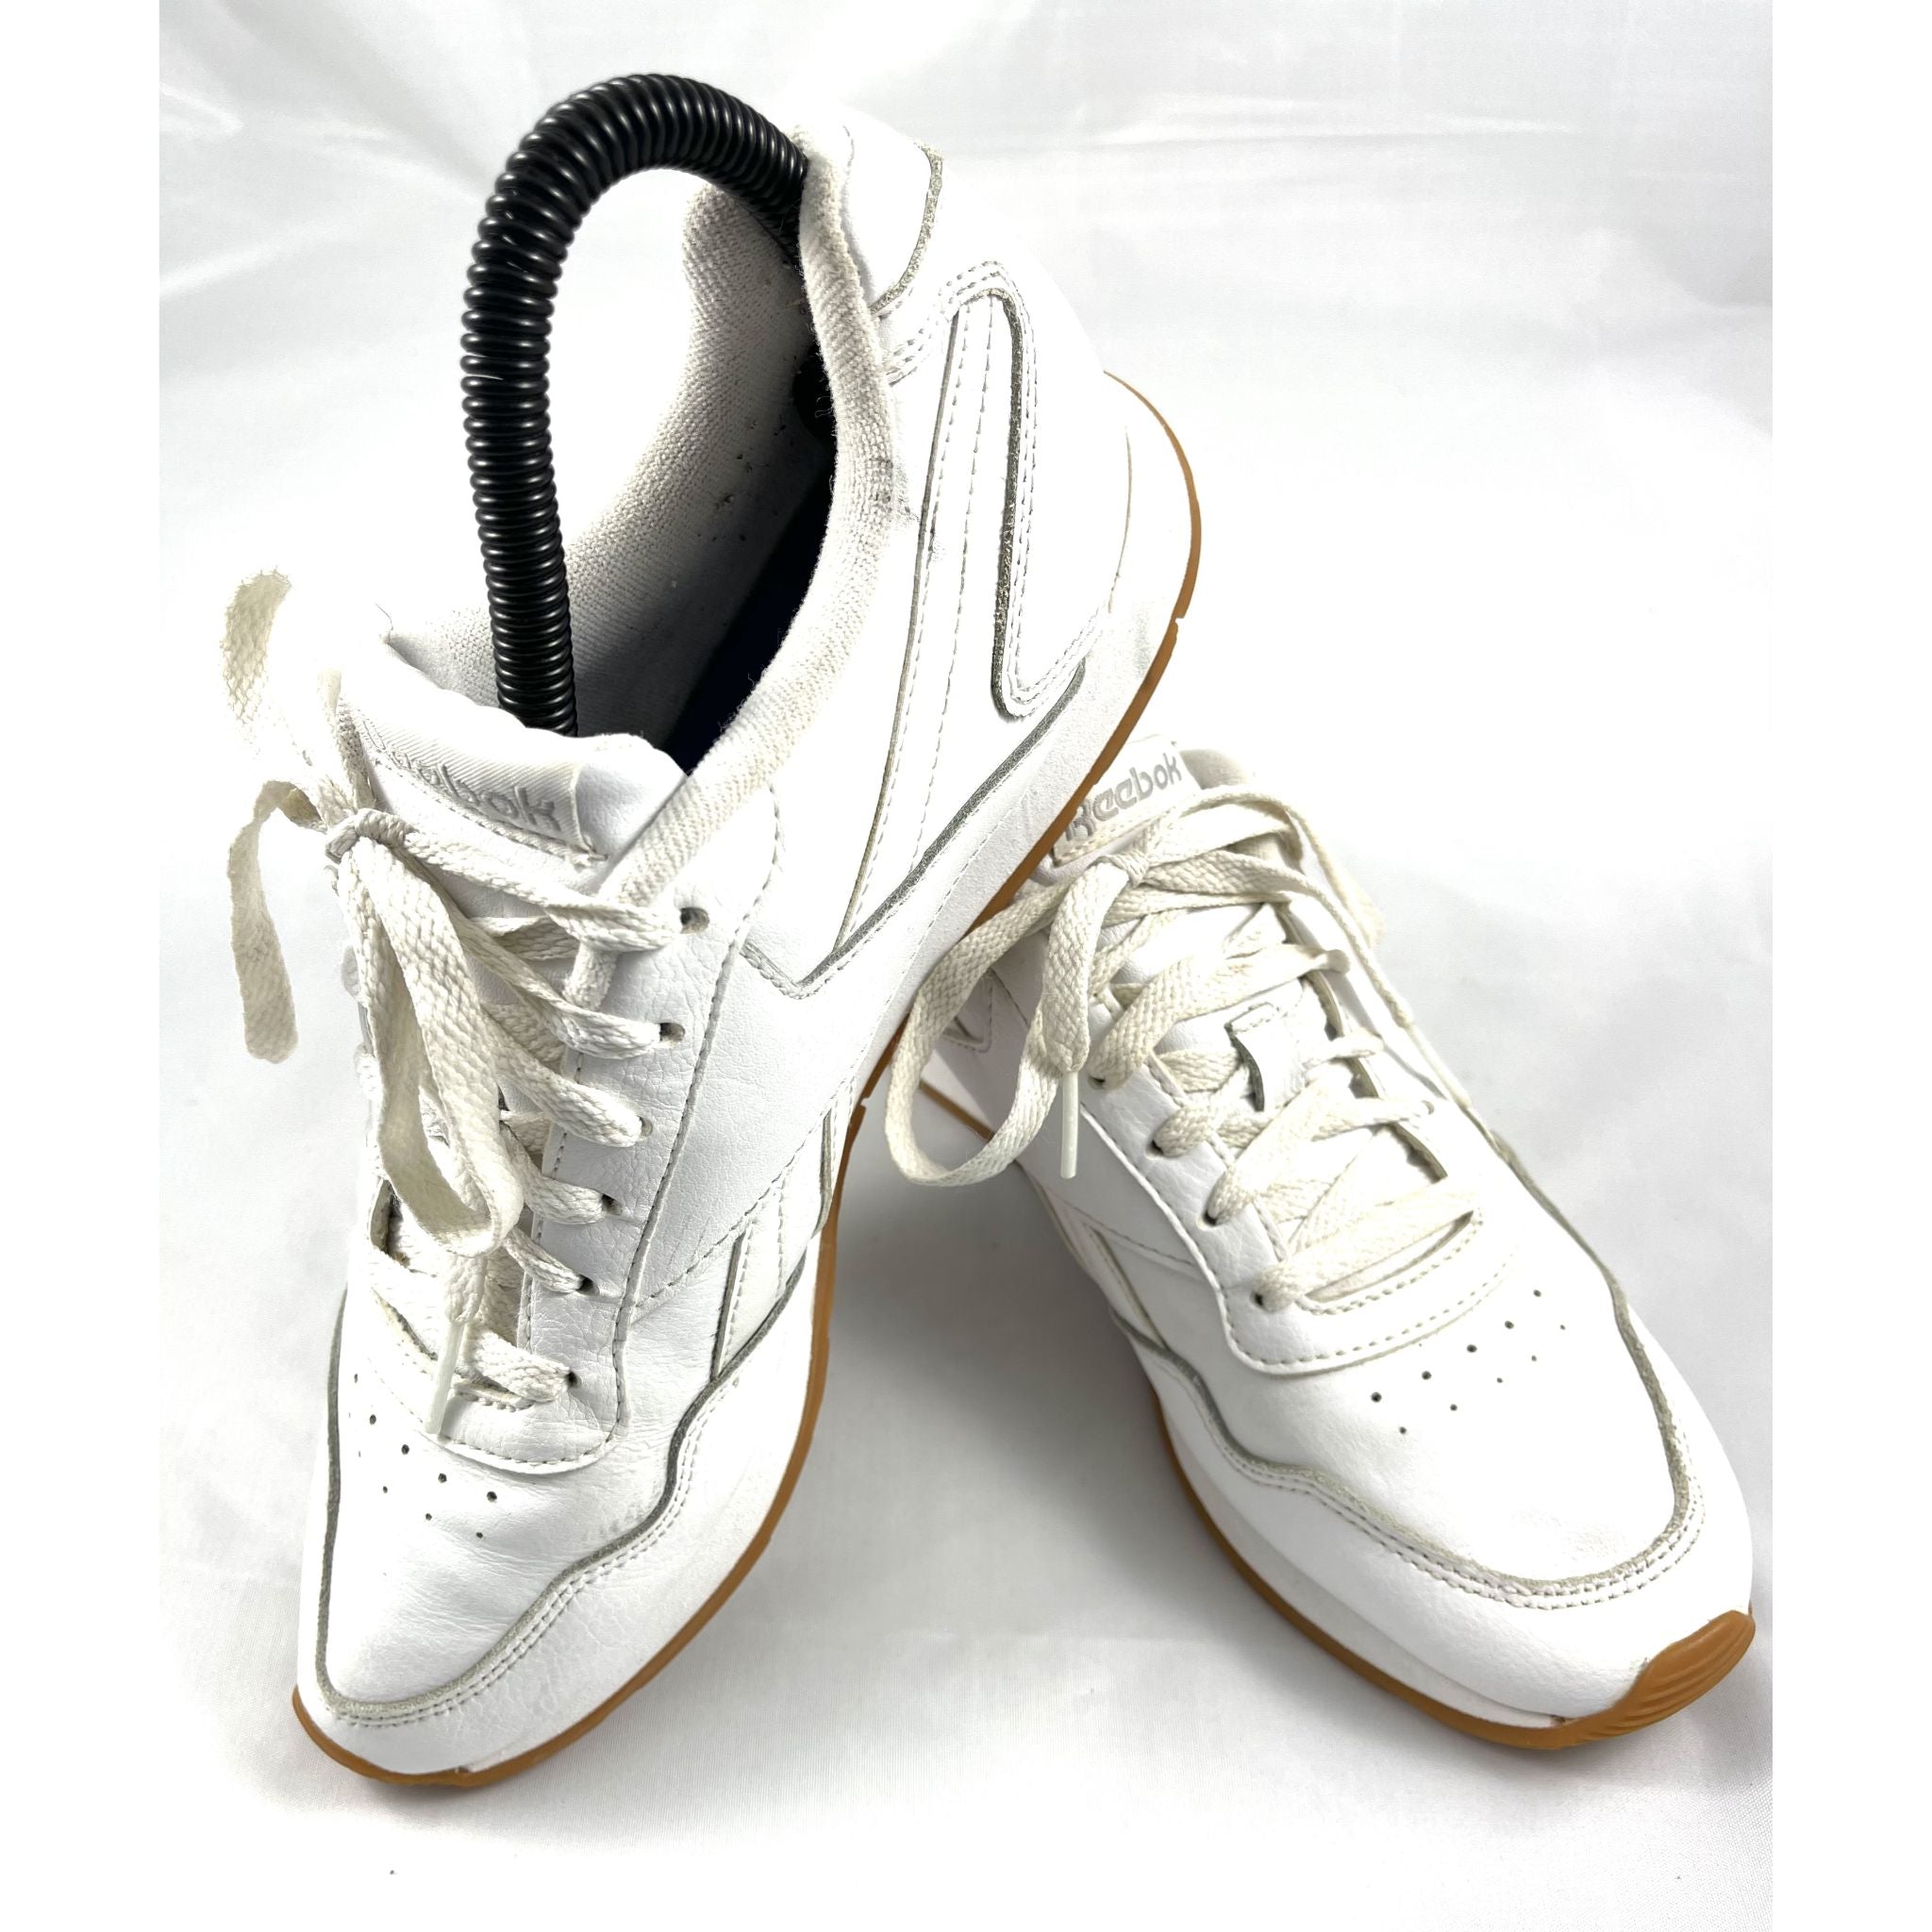 ريبوك أحذية رياضية بيضاء